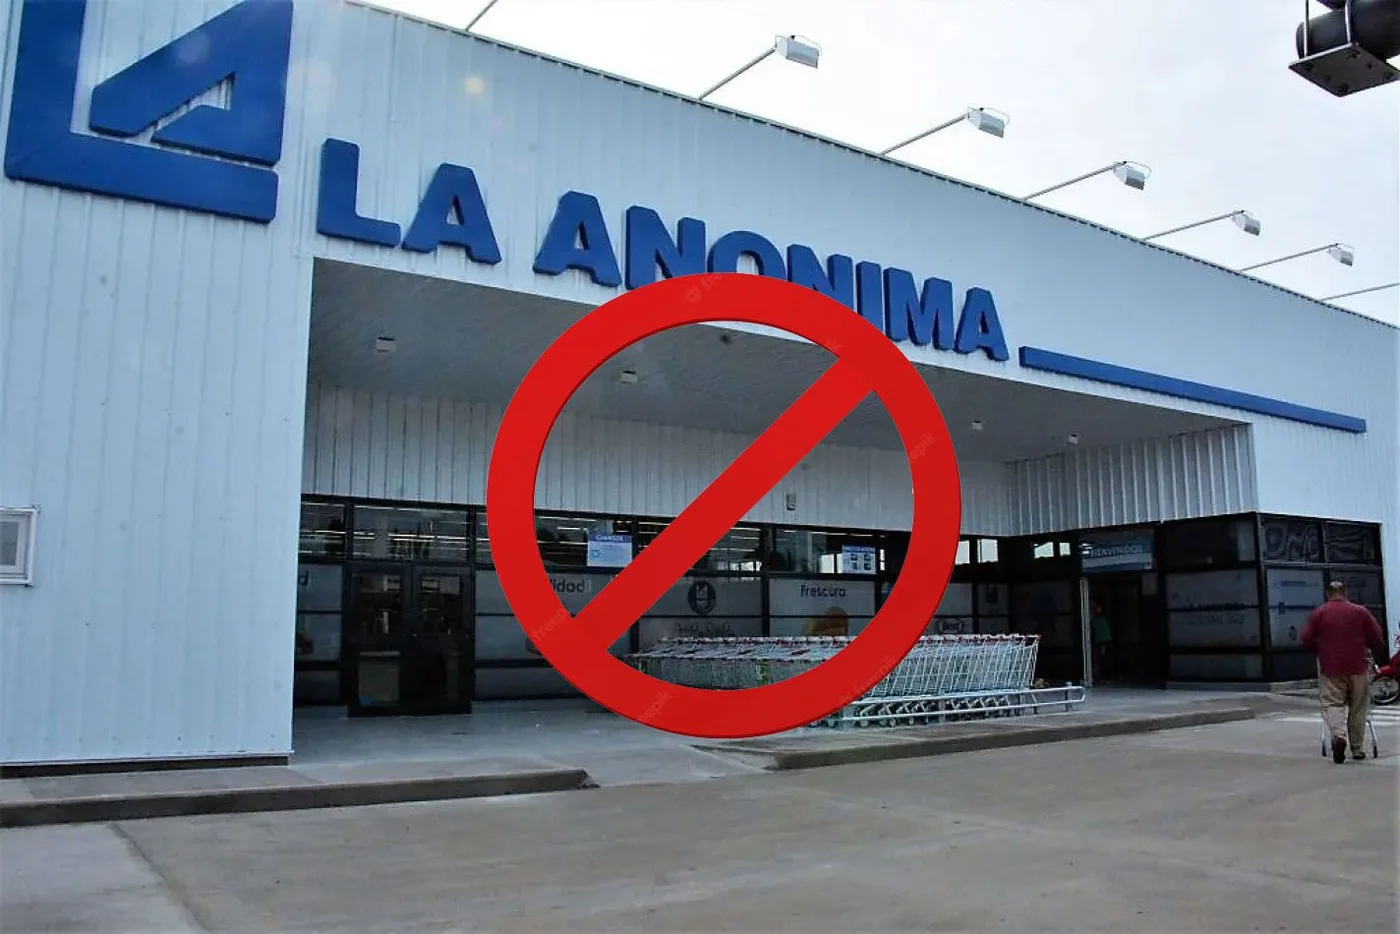 El Gobierno inicia un complot contra supermercados La Anónima